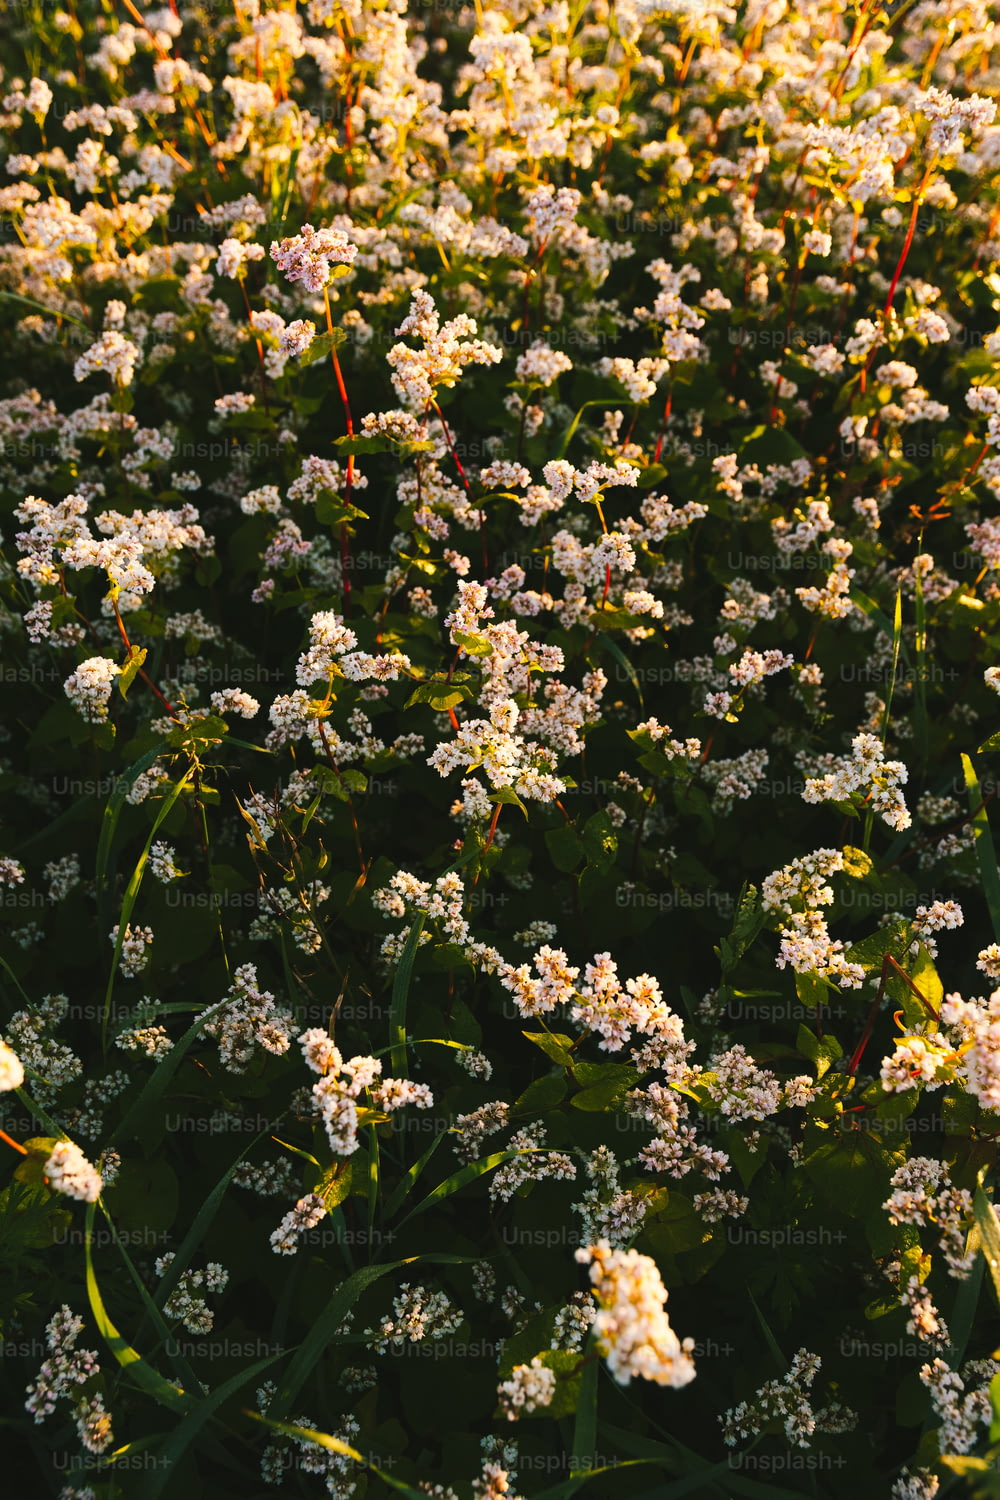 Un campo de flores blancas a la luz del sol